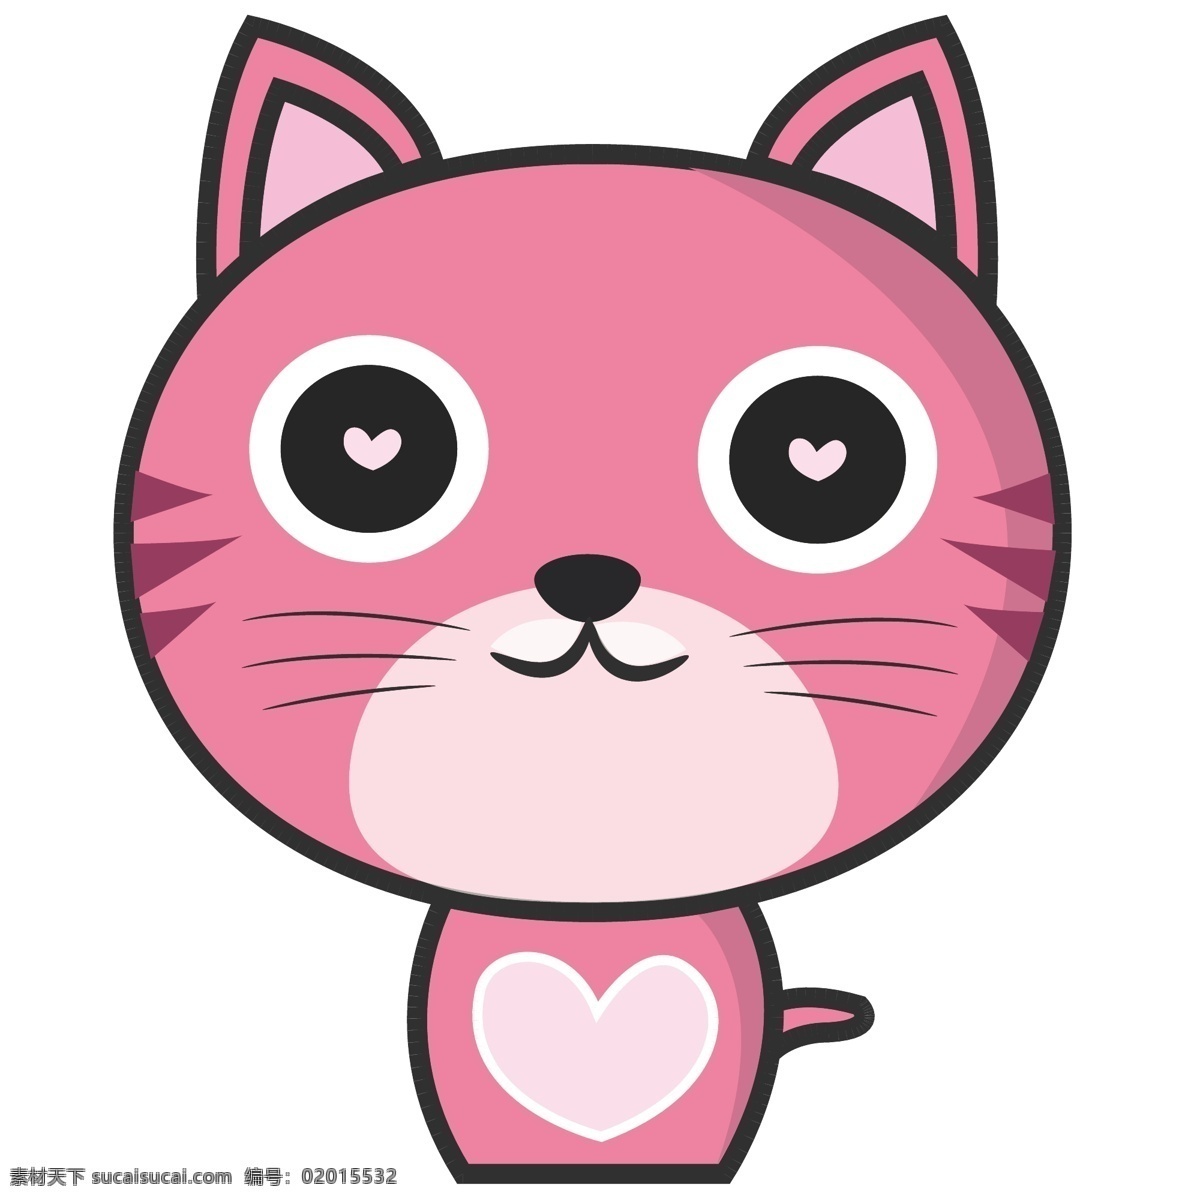 卡通 粉红 可爱 猫 小猫 猫咪 宠物 粉红小猫 萌宠 可爱猫咪 可爱动物 简洁 矢量小猫